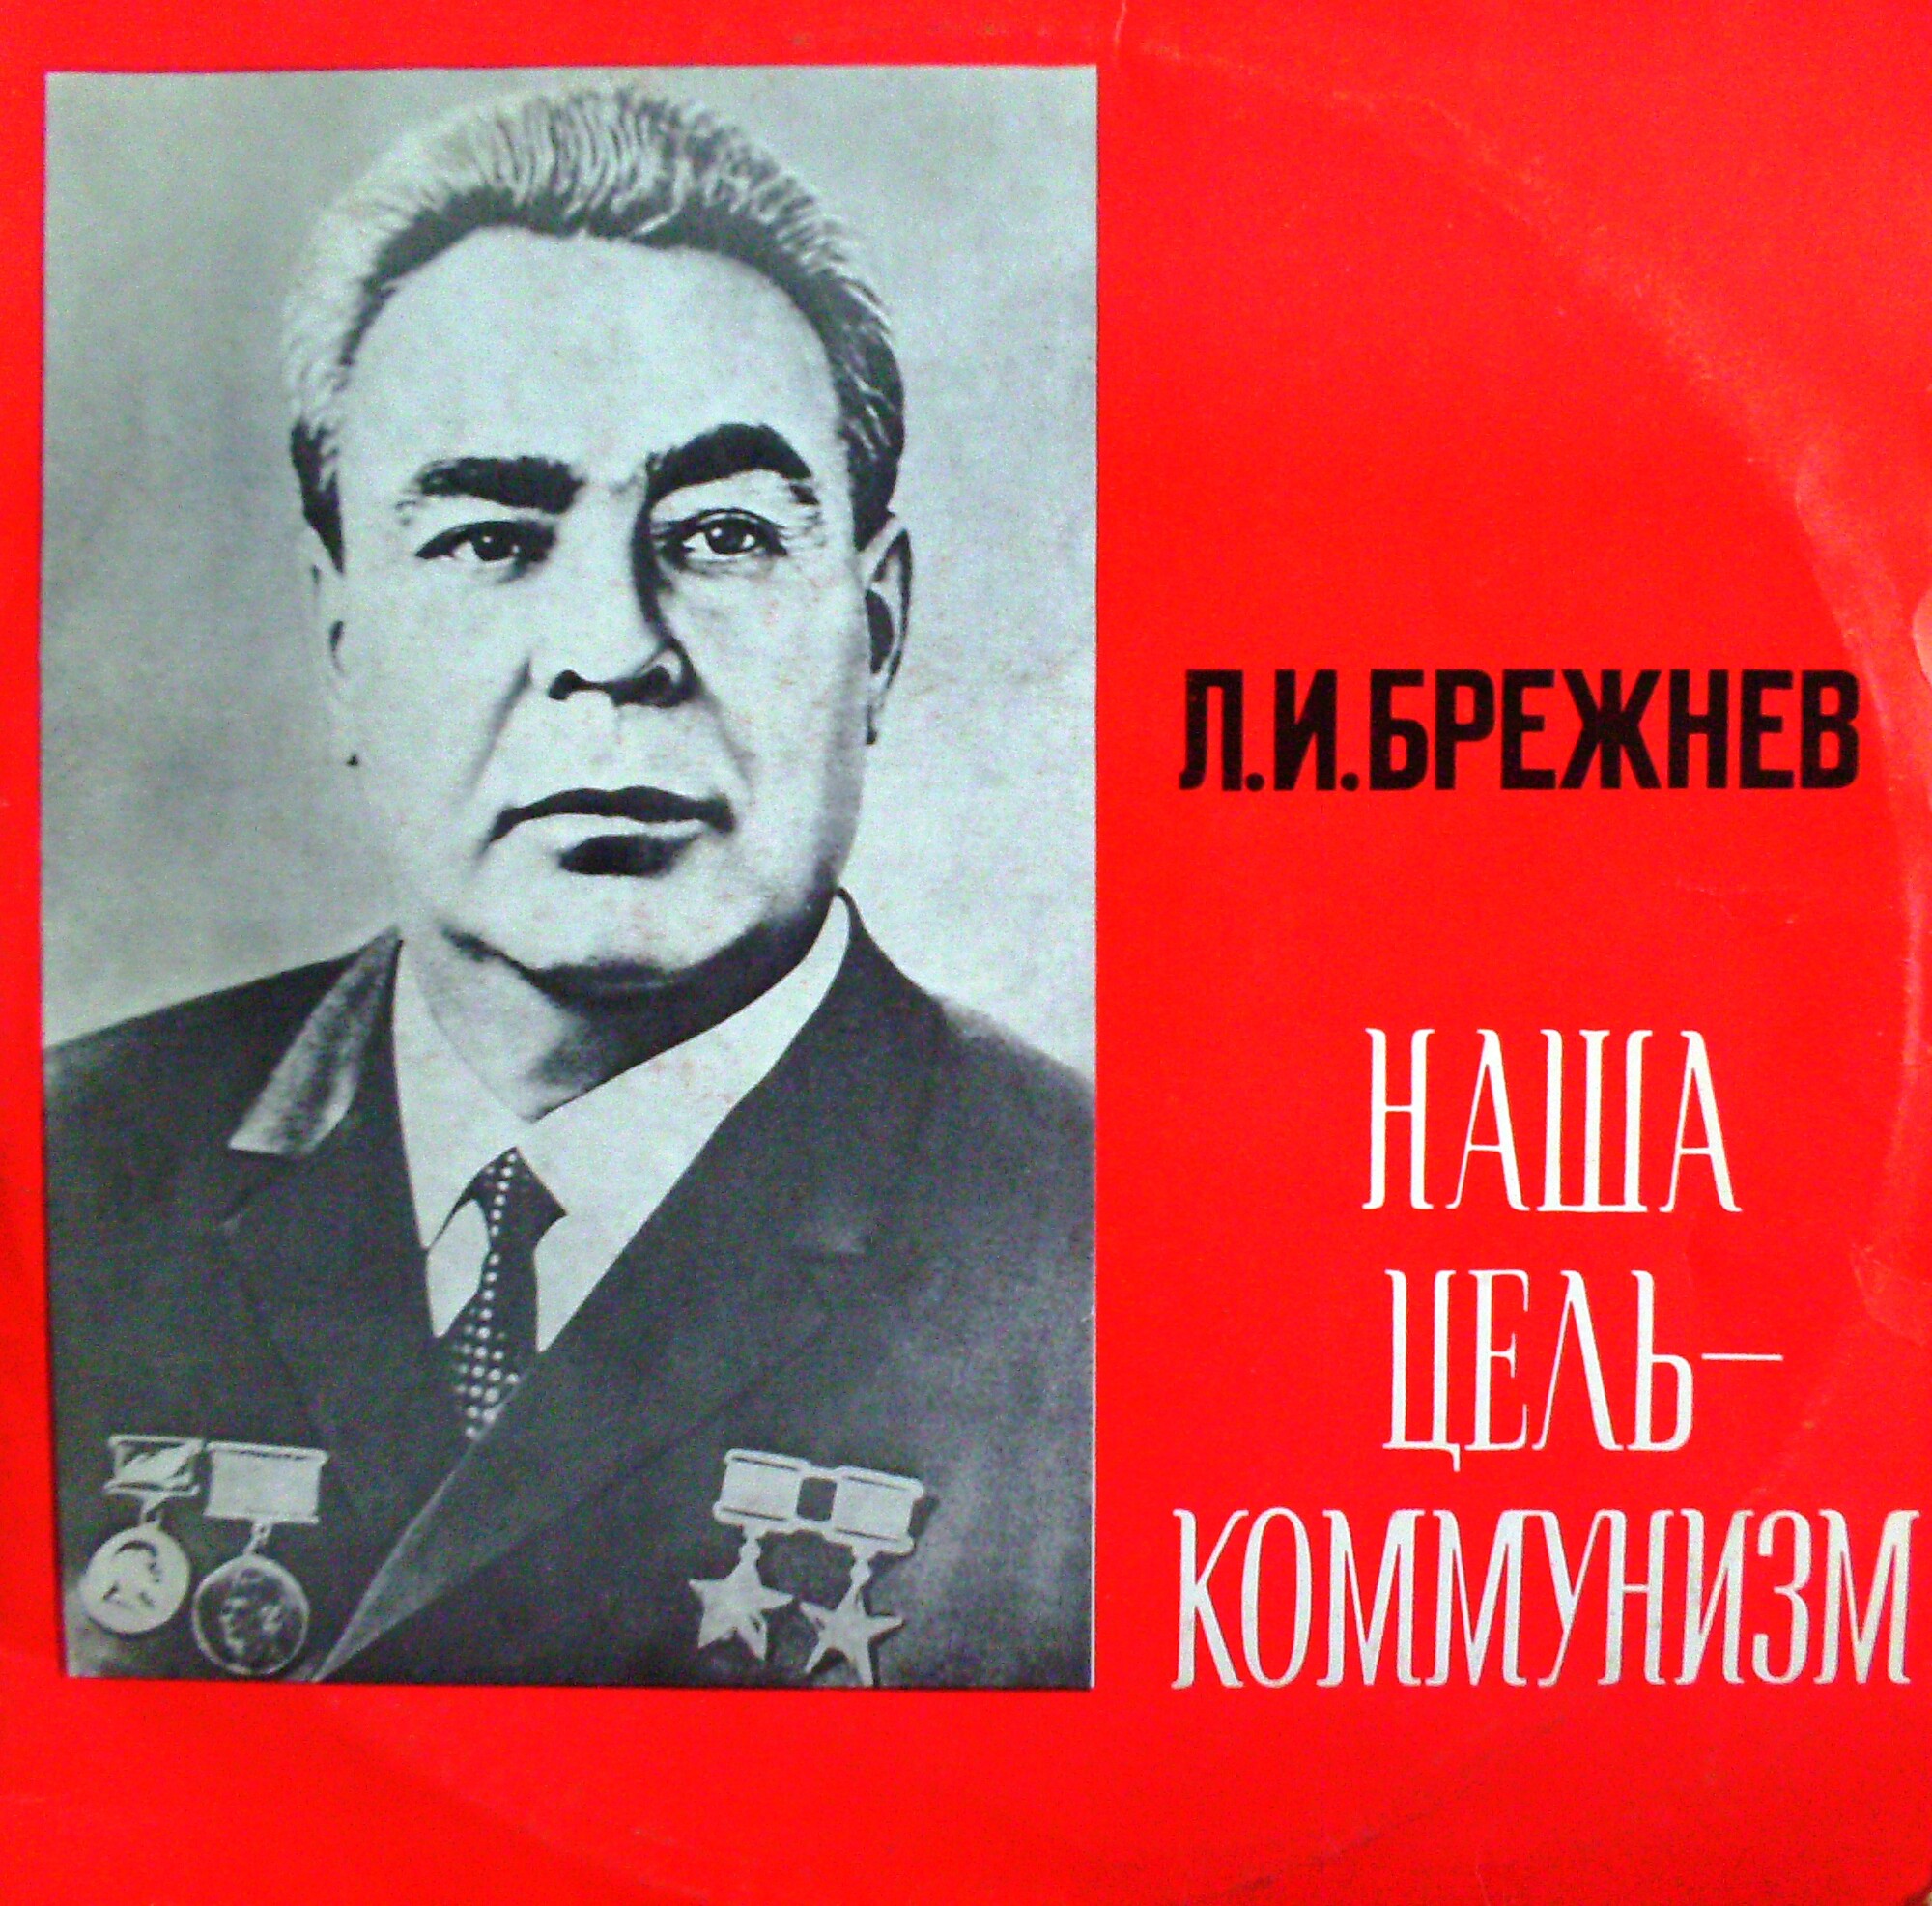 Л. И. Брежнев. "Наша цель — коммунизм"